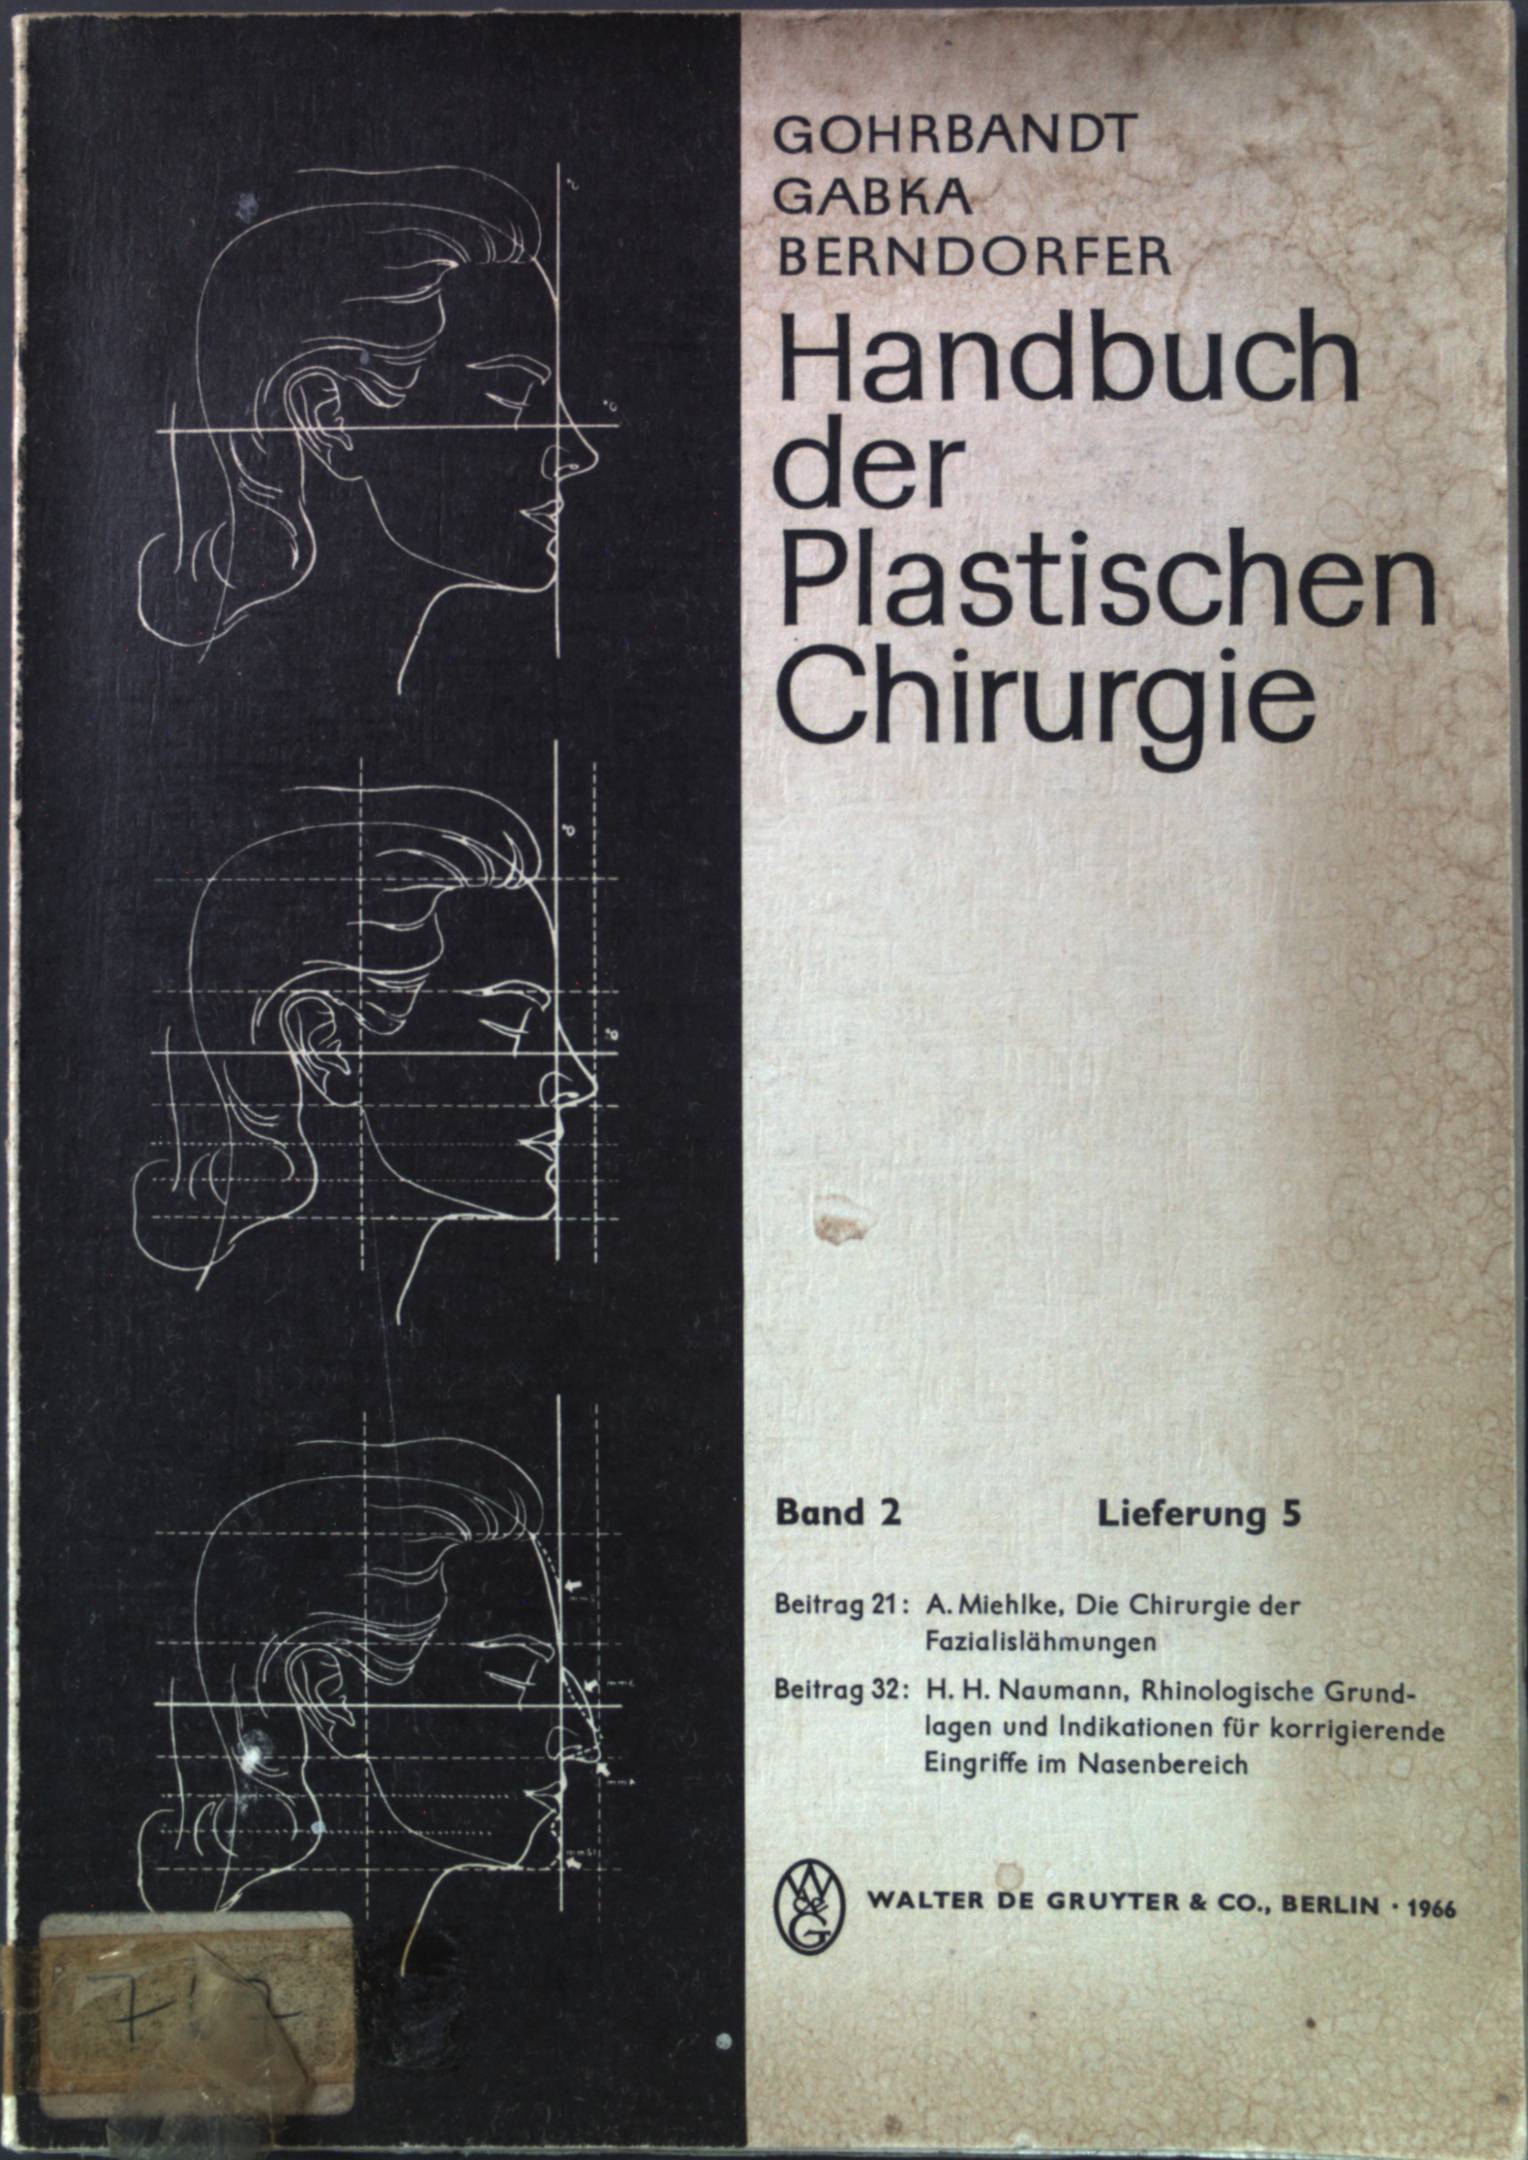 Handbuch der Plastischen Chirurgie: Band 2; Spezielle Plastische Chirurgie - Gohrbandt, E., J. Gabka und A. Berndorfer